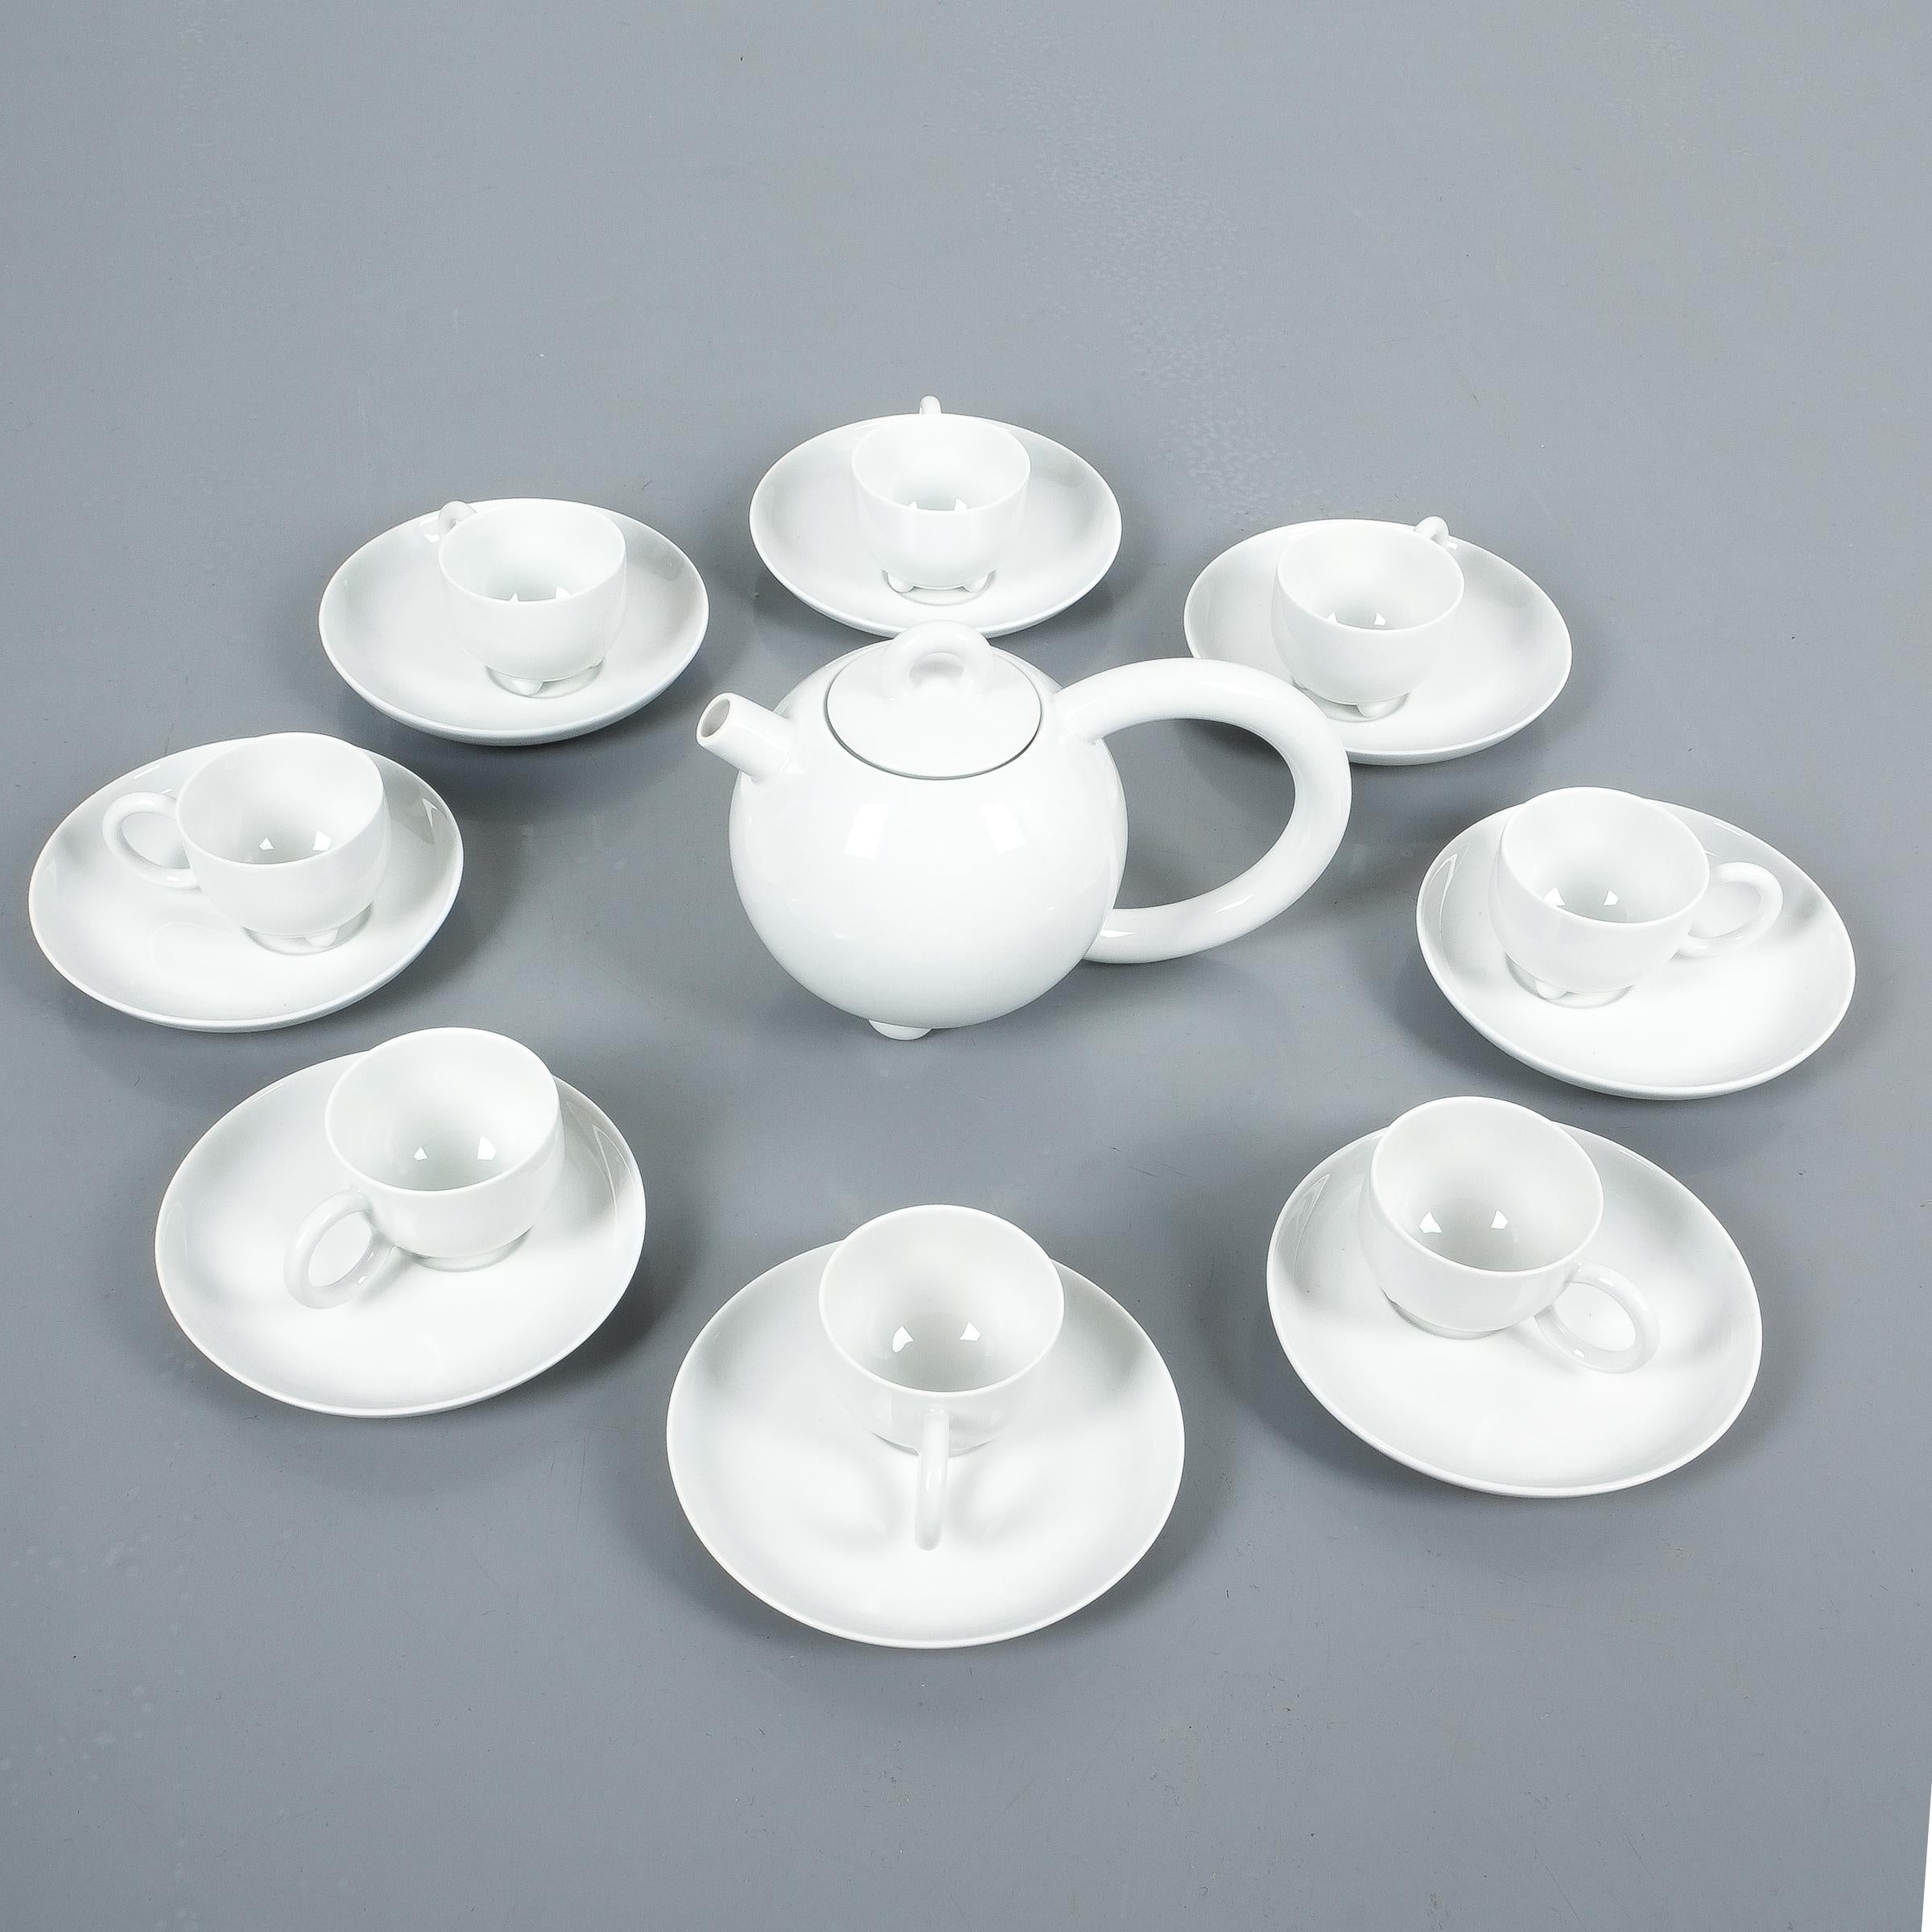 Matteo Thun Fantasia Mocca oder Teeservice Porzellan für Arzberg, 1980er Jahre. Makelloses Set bestehend aus einer Teekanne mit Deckel, acht Tassen mit Untertassen, einem Milchkännchen und einem Zuckerbehälter mit Deckel, gemarkt. Wir haben ein